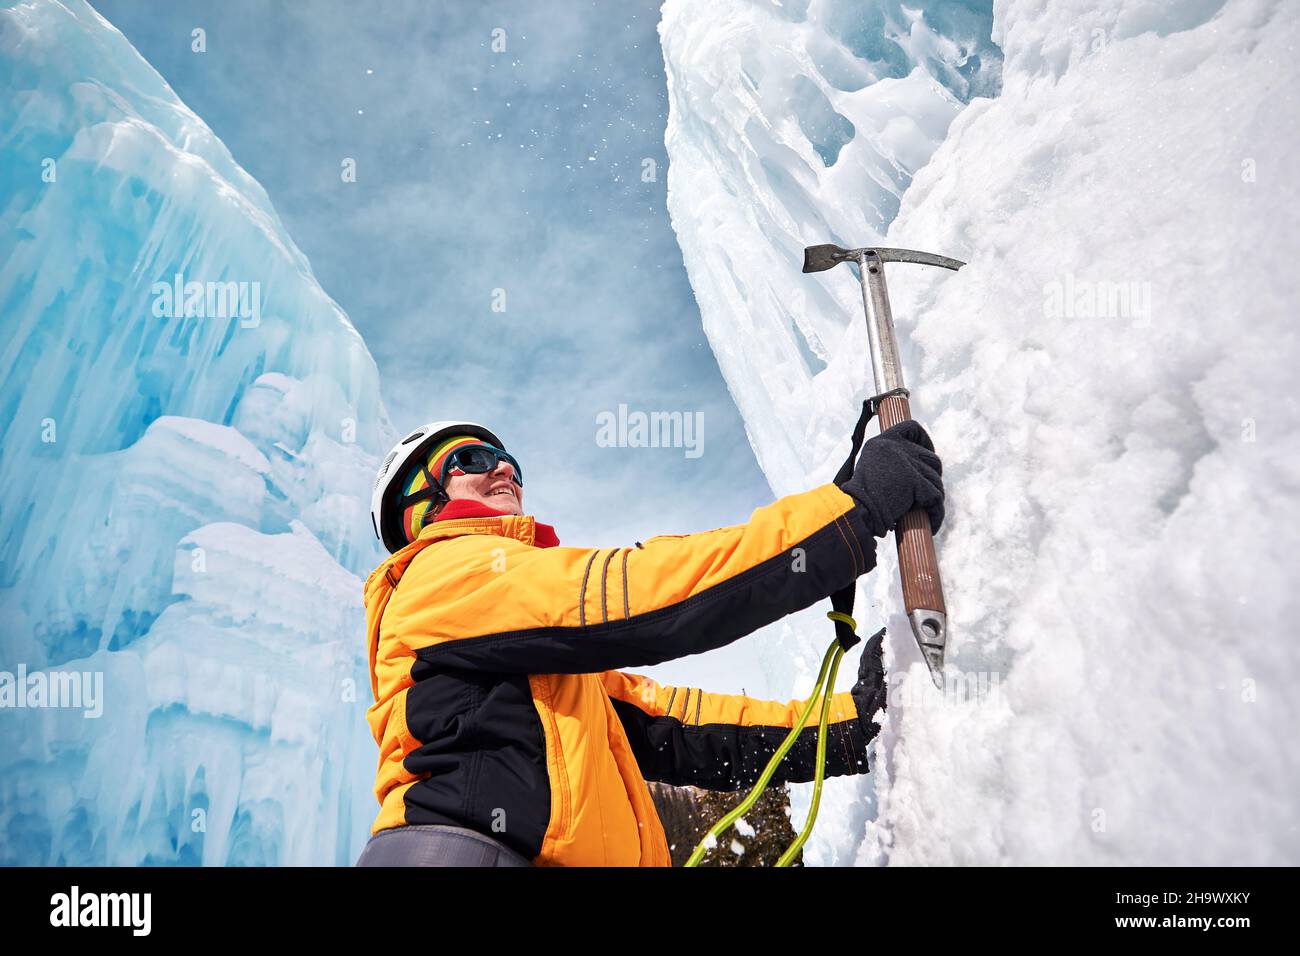 Die Frau klettert in den Bergen einen gefrorenen Wasserfall im Helm mit Eispickel in orangefarbener Jacke. Sportbergsteigen und Alpinismus Konzept. Stockfoto